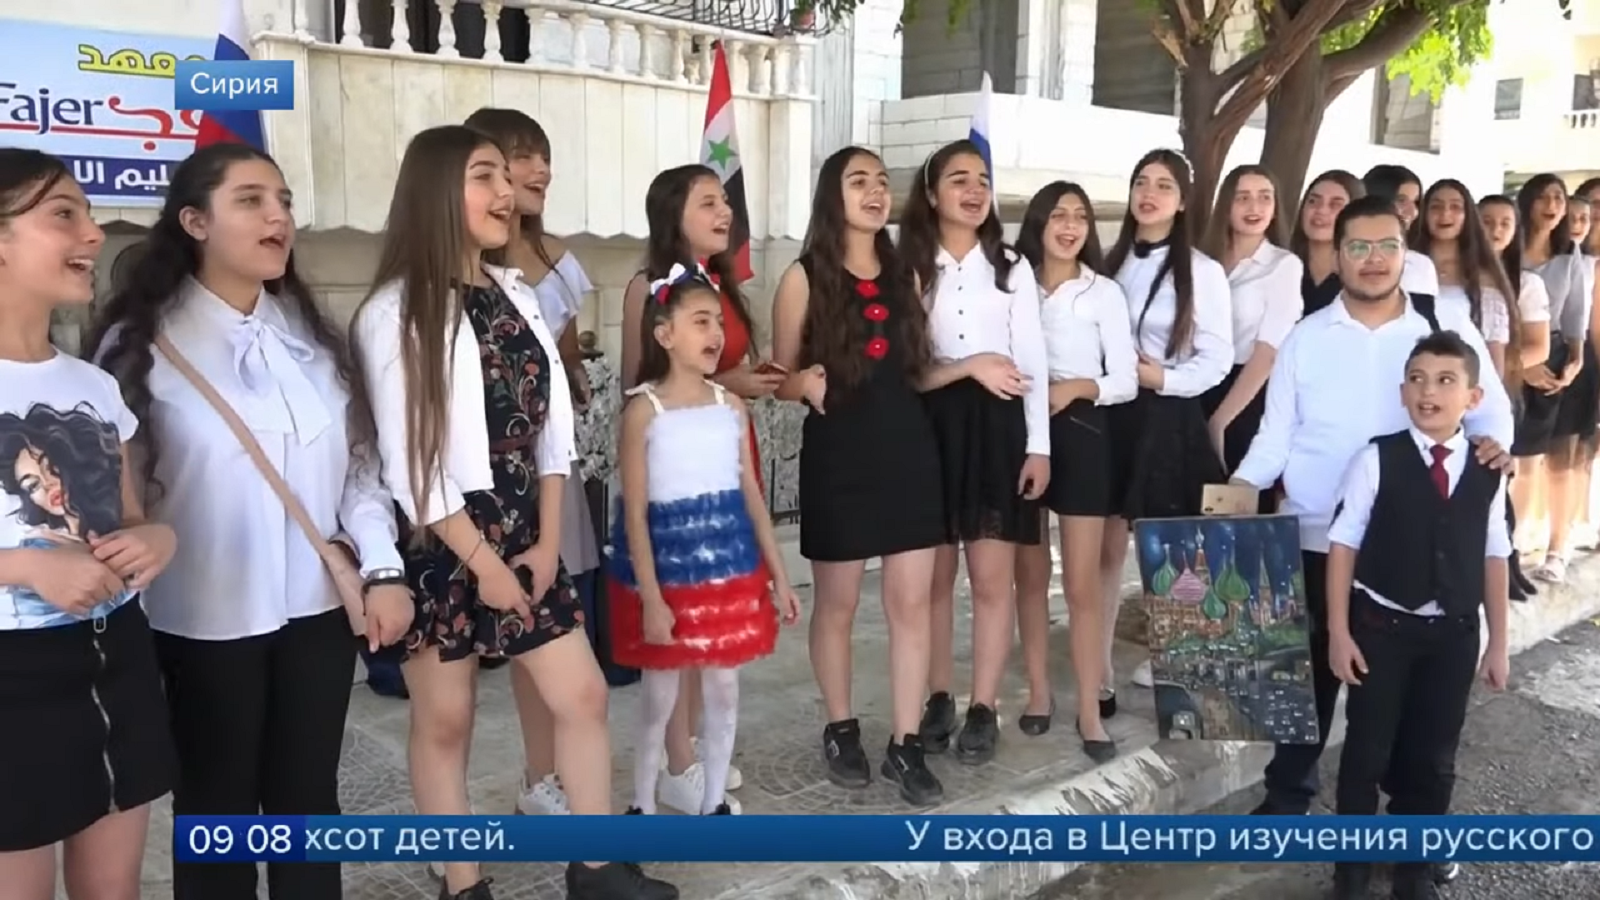 ثقافة "ربط المصير".. مدارس اللغة الروسية في سوريا